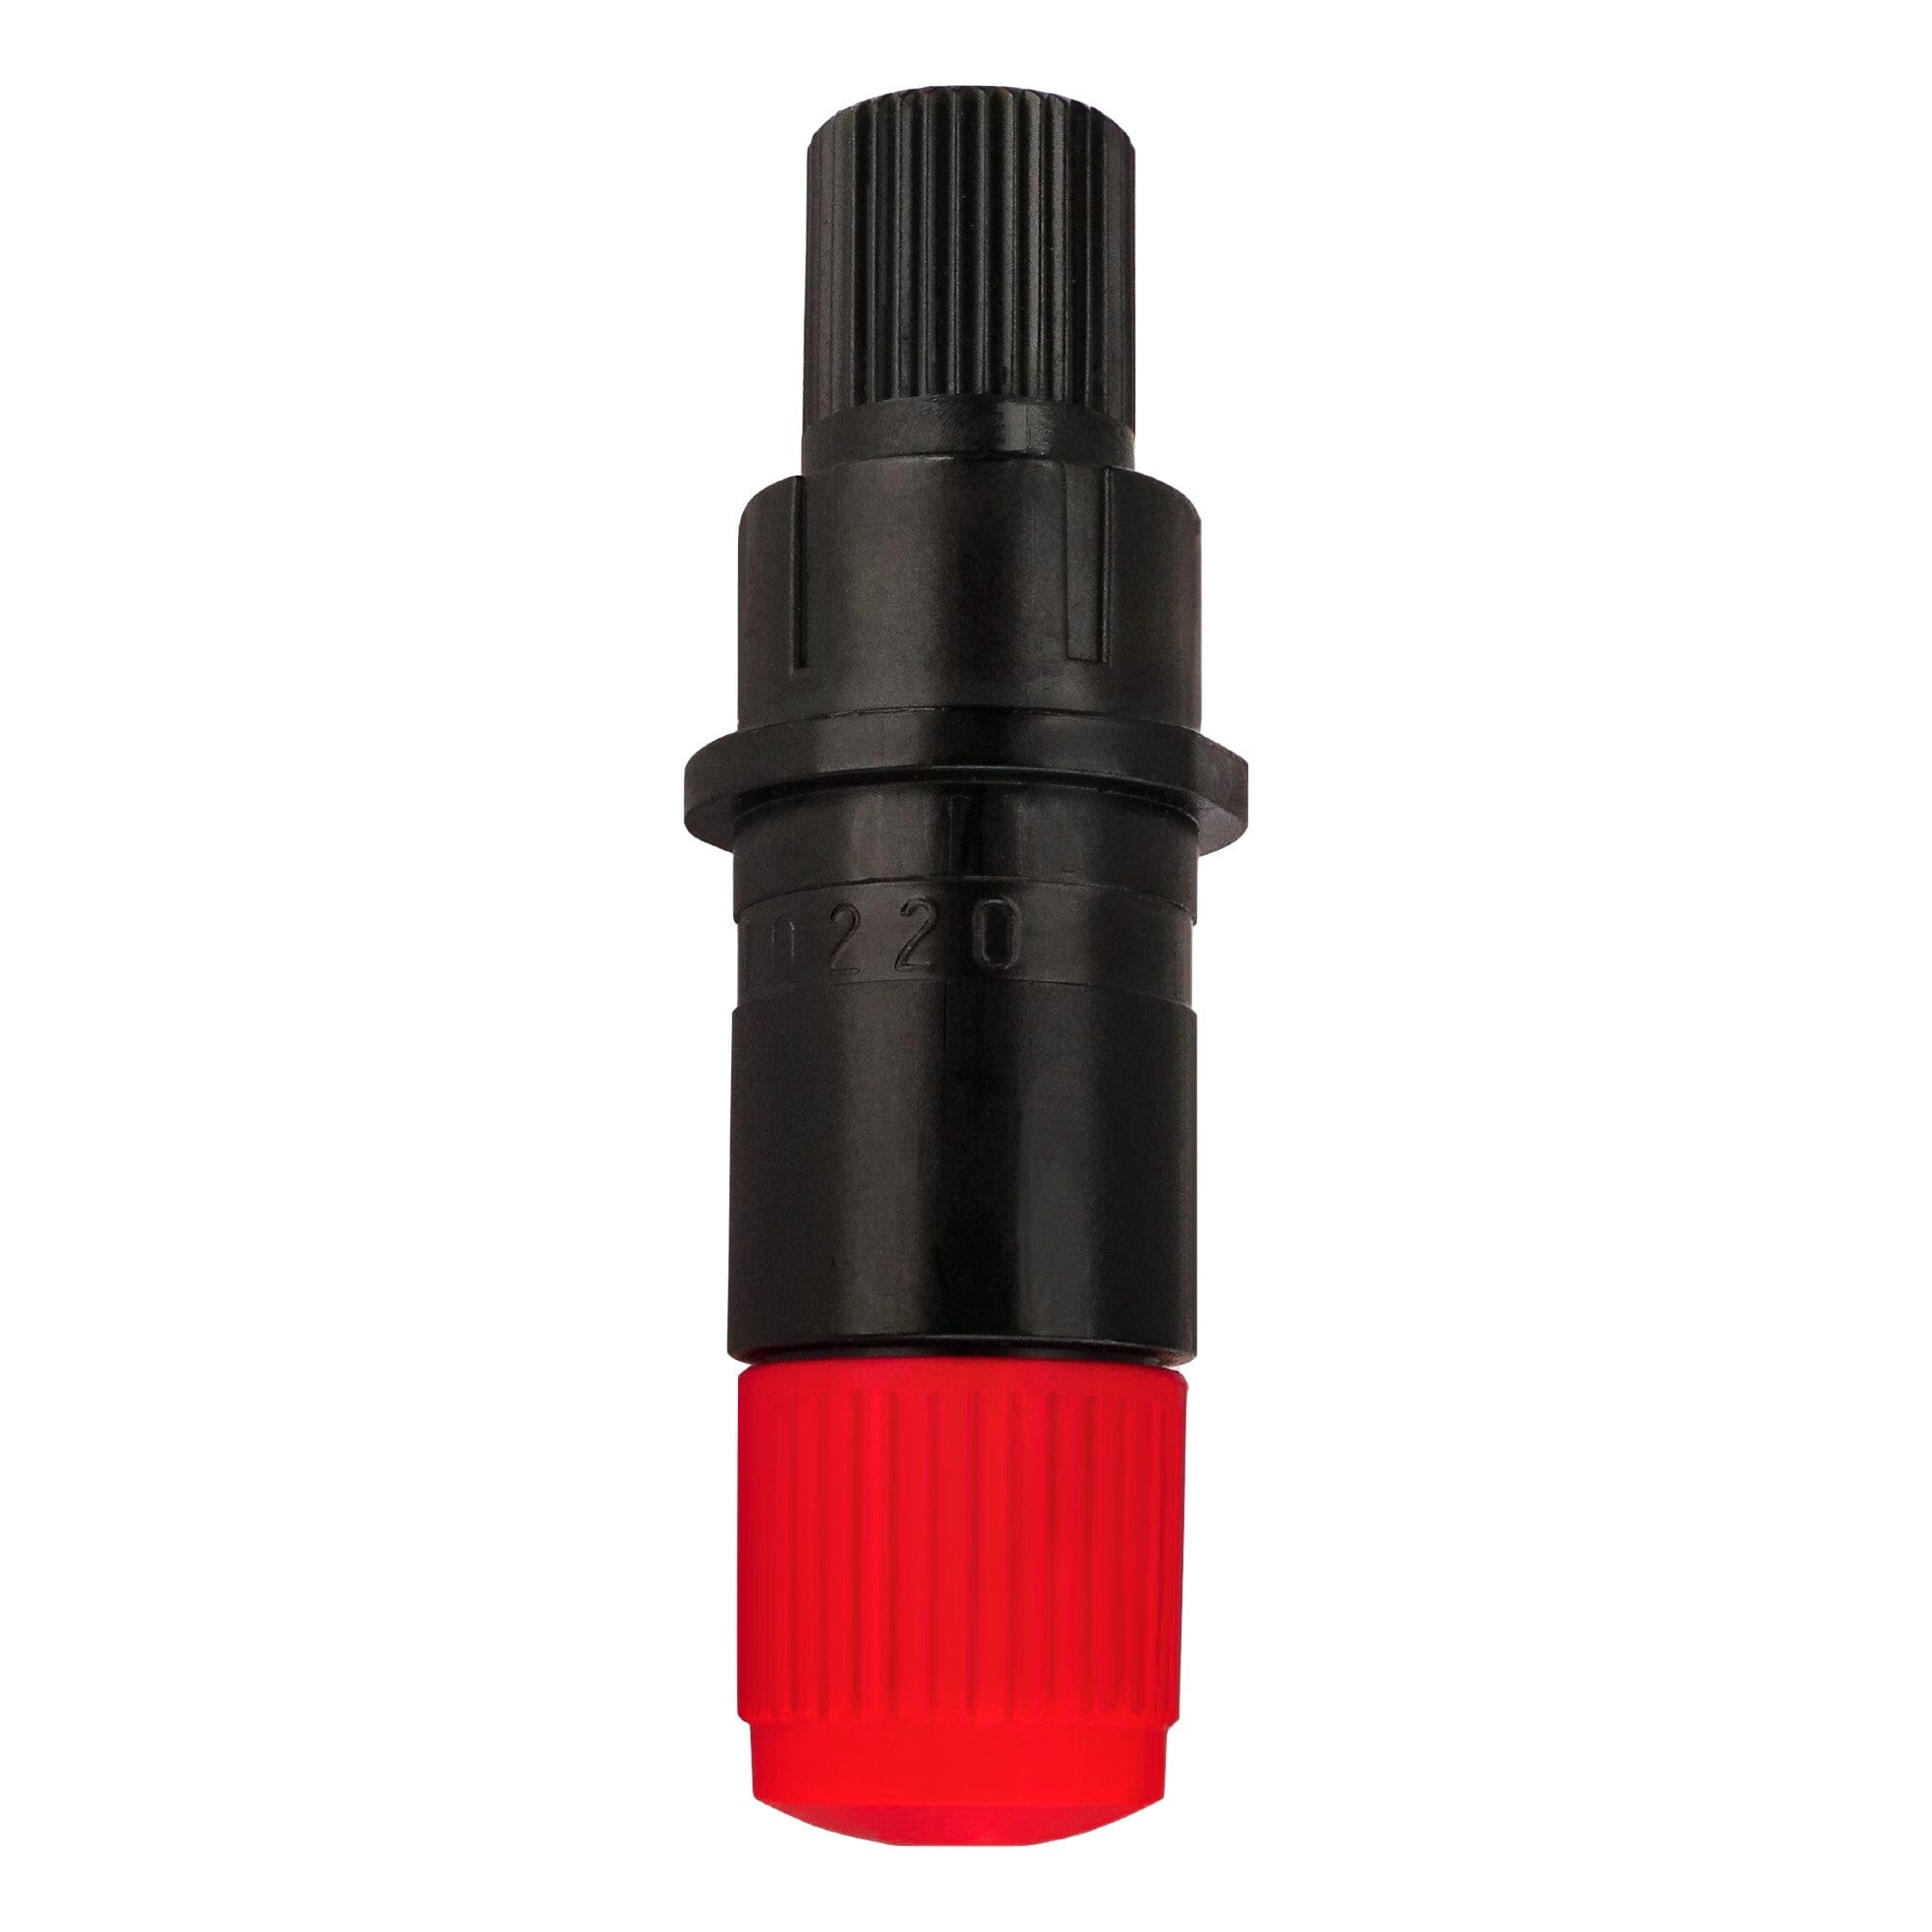 Graphtec fiber tip pen black (LUMOCOLOR-311-BLK) —